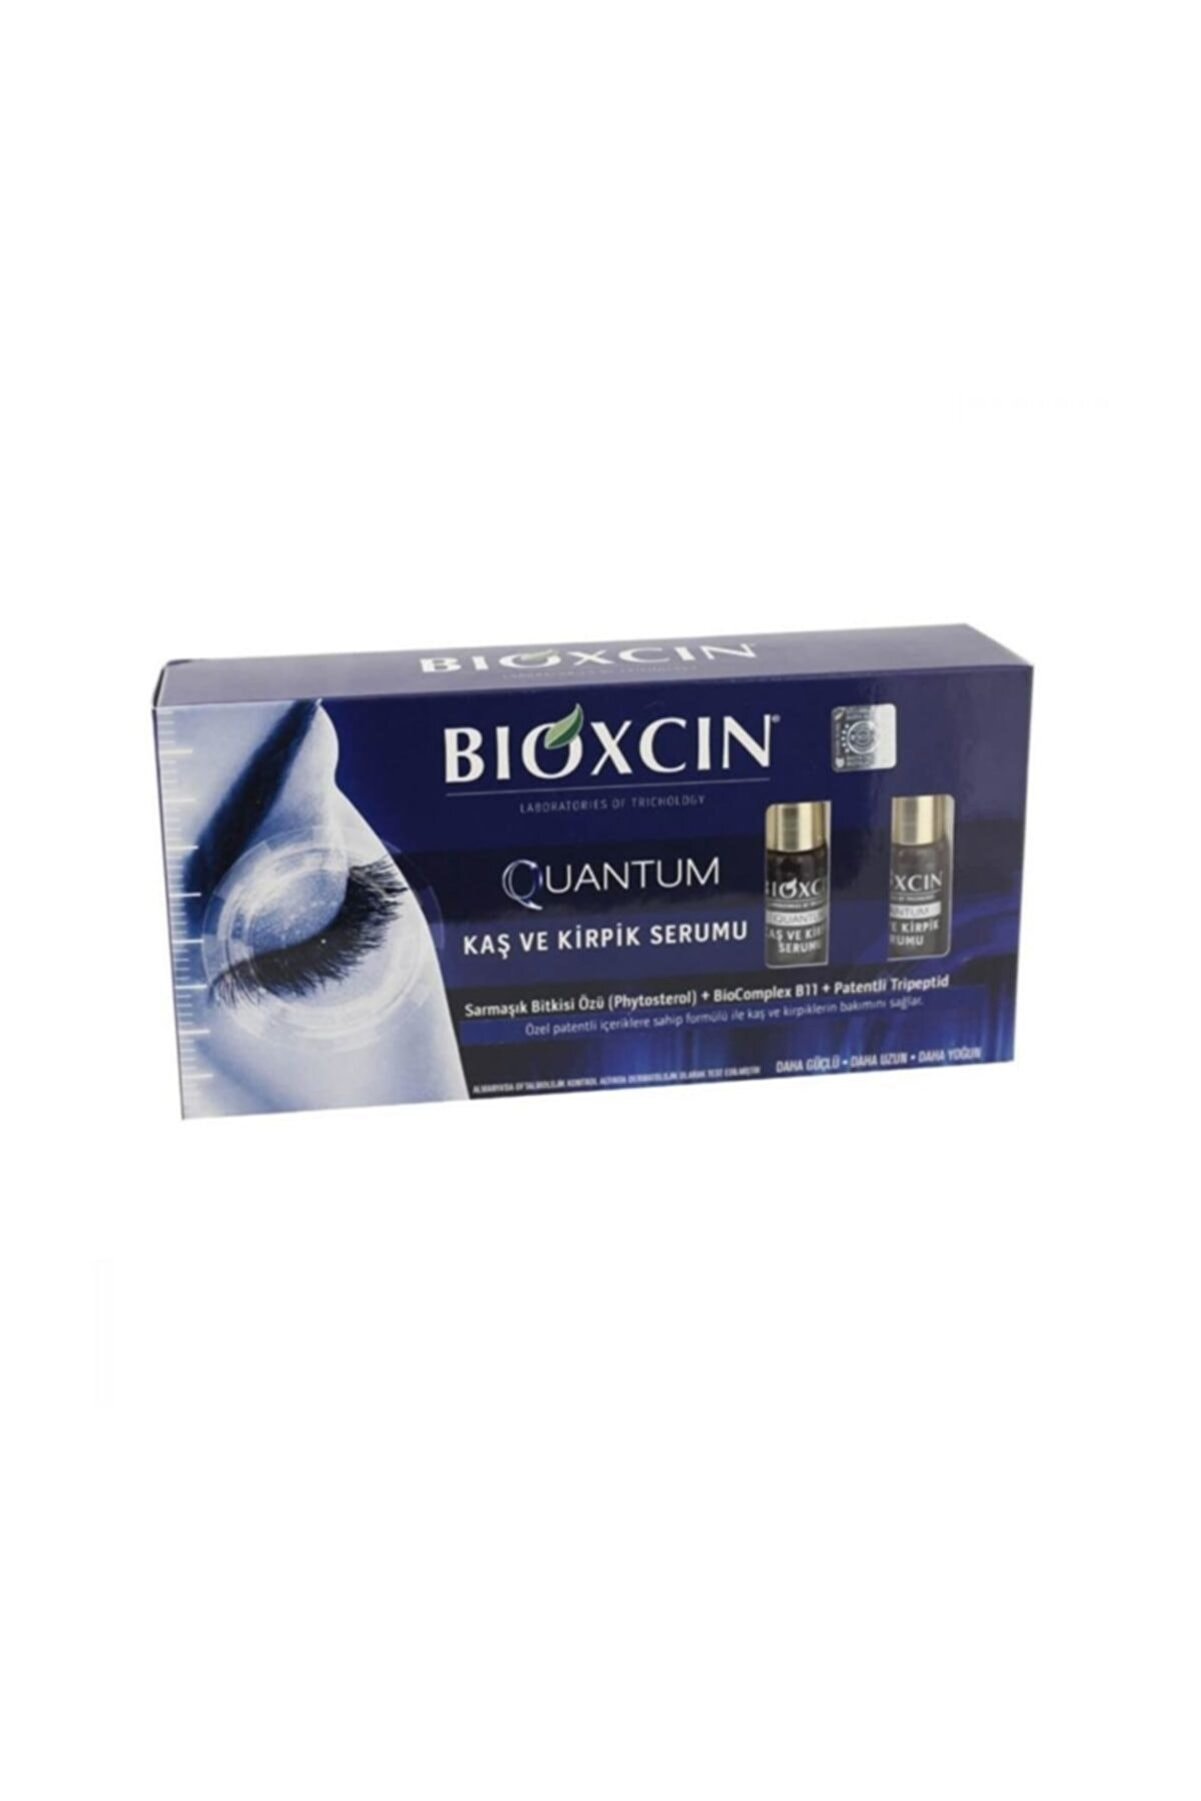 Bioxcin Quantum Kaş Ve Kirpik Serumu 2 X 5 ml.